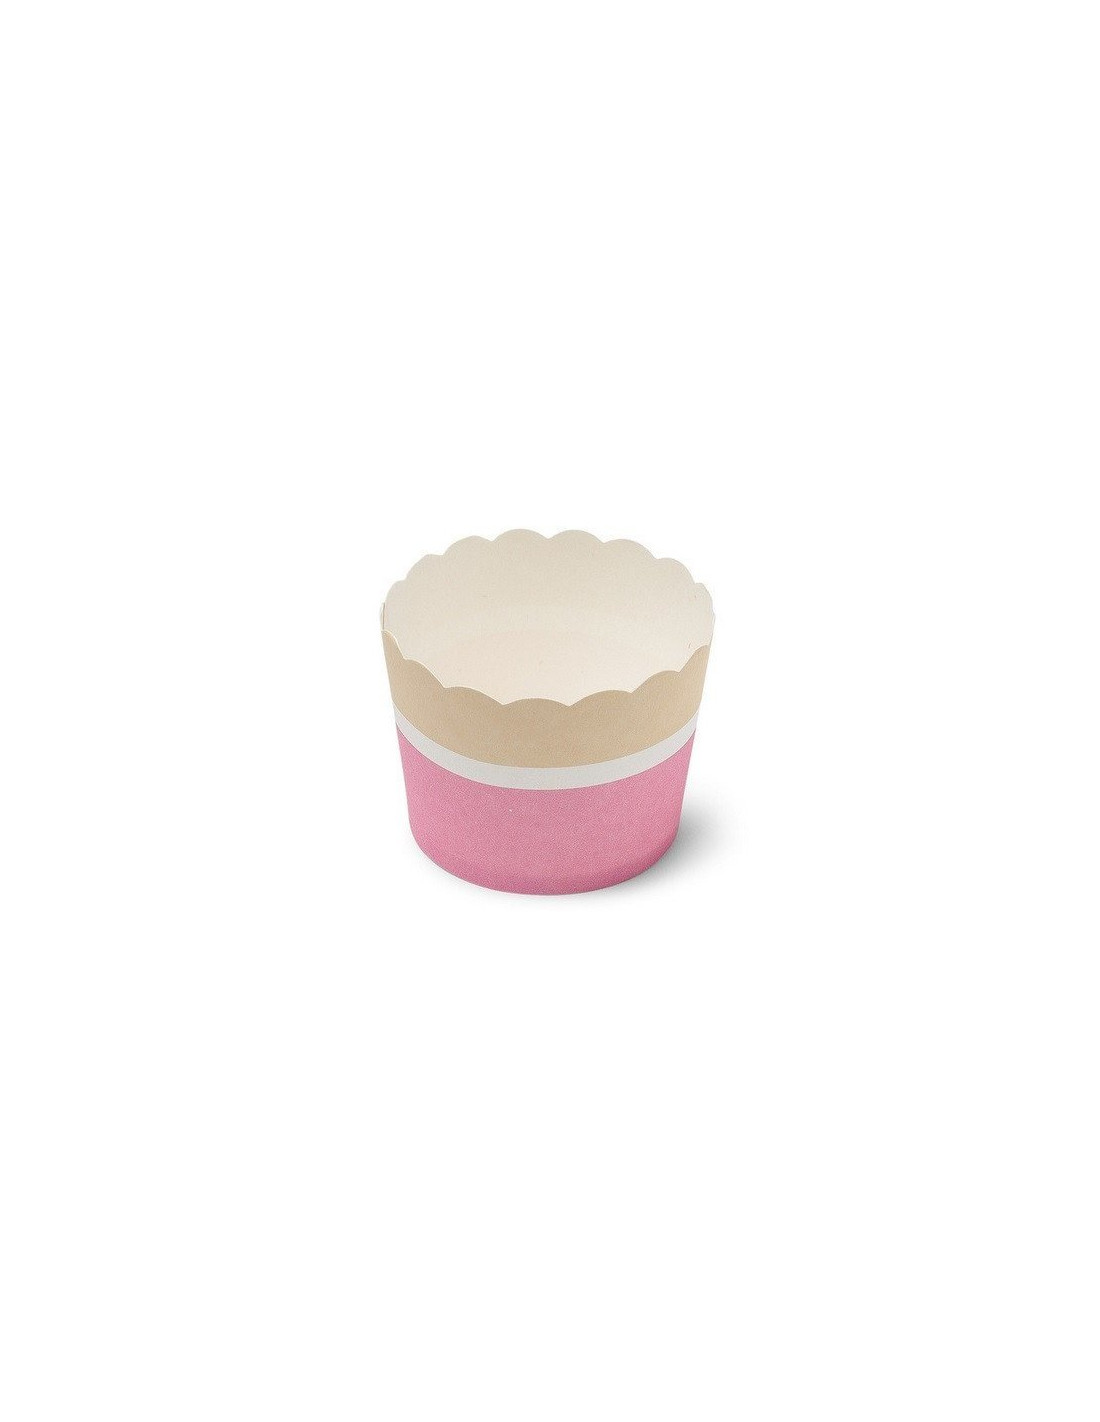 Boite de 15 caissettes cupcake dégradé pastel rose et parme